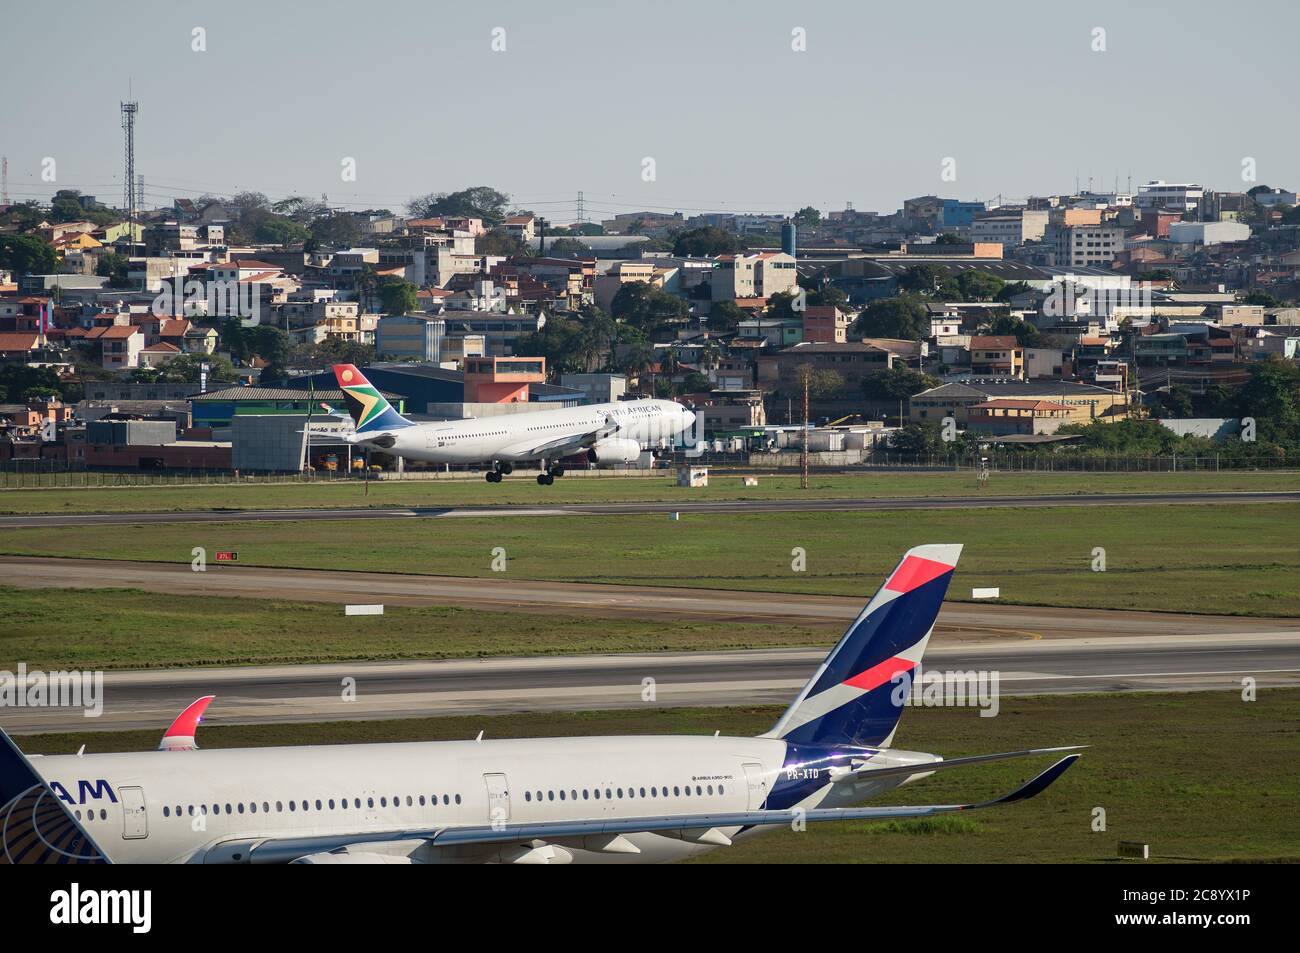 South African Airways Airbus A330-243 (Charlotte Maxeke - Reg. ZS-SXZ) kurz vor der Landung auf der Landebahn 27L von Sao Paulo/Guarulhos Intl. Flughafen. Stockfoto